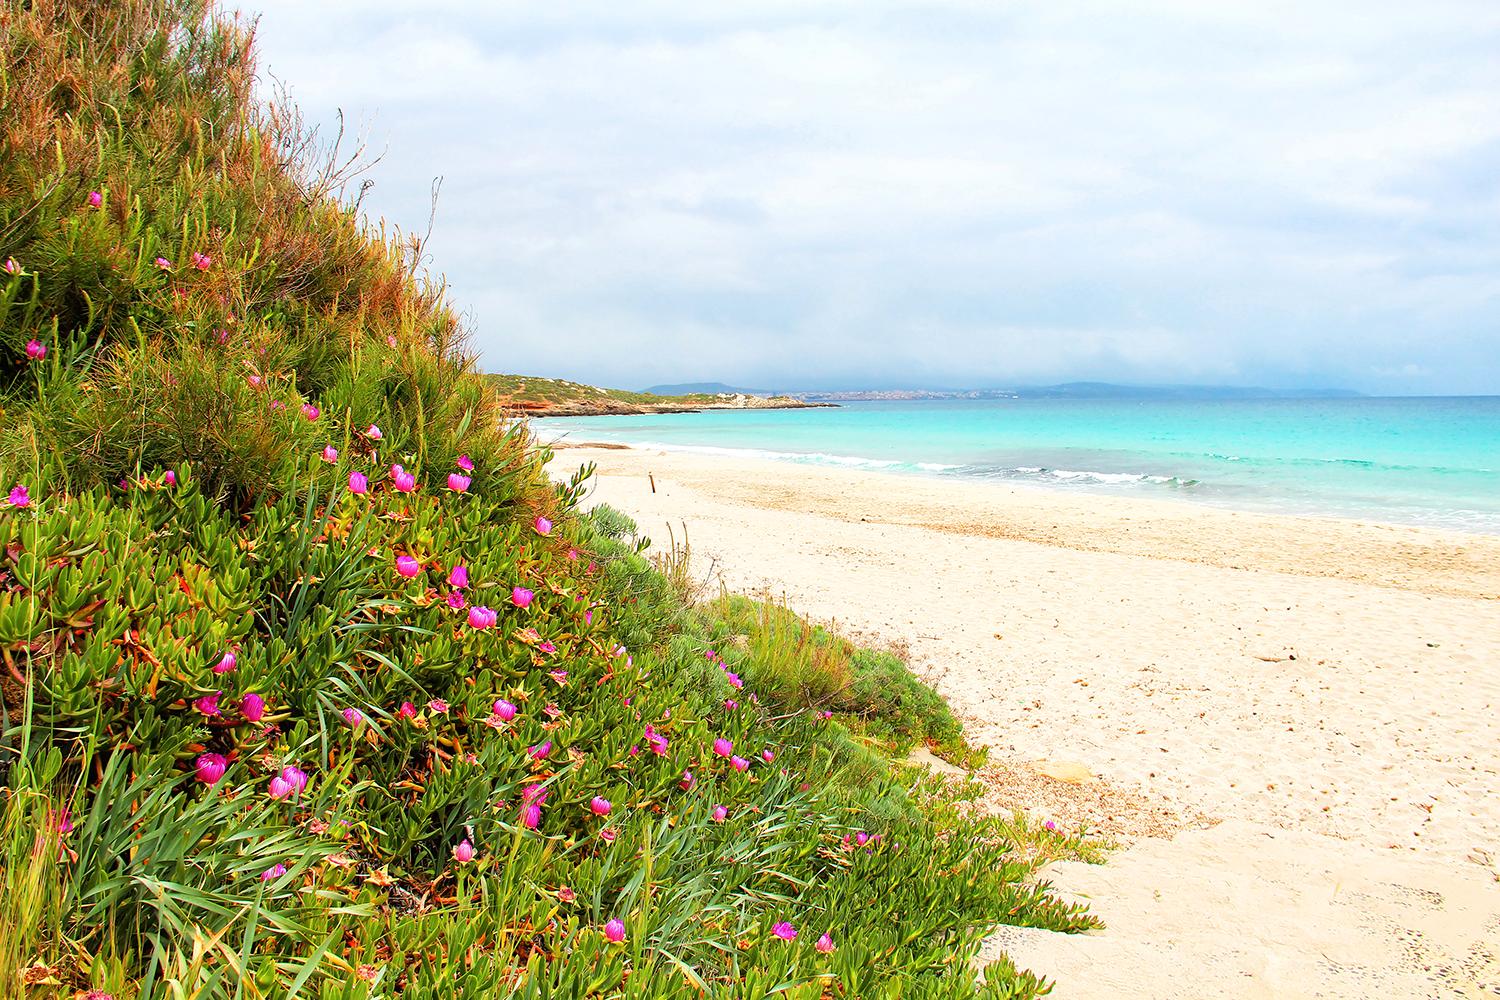 Det är olagligt att sno sand på Sardinien - sandtjuvar bötfälls. Här är Le Bombarde-stranden nära Alghero på Sardinien.